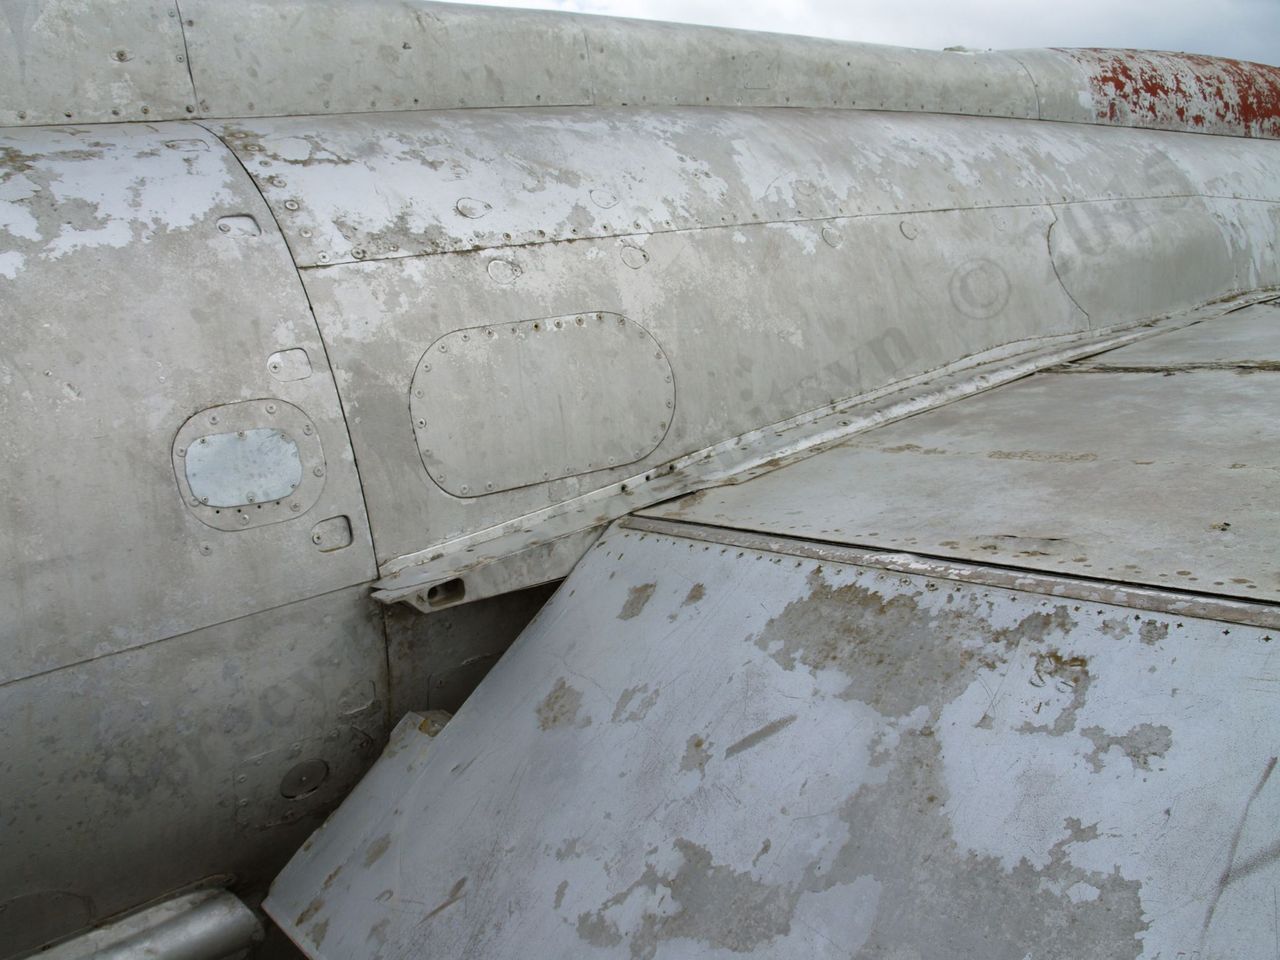 MiG-21_10.jpg